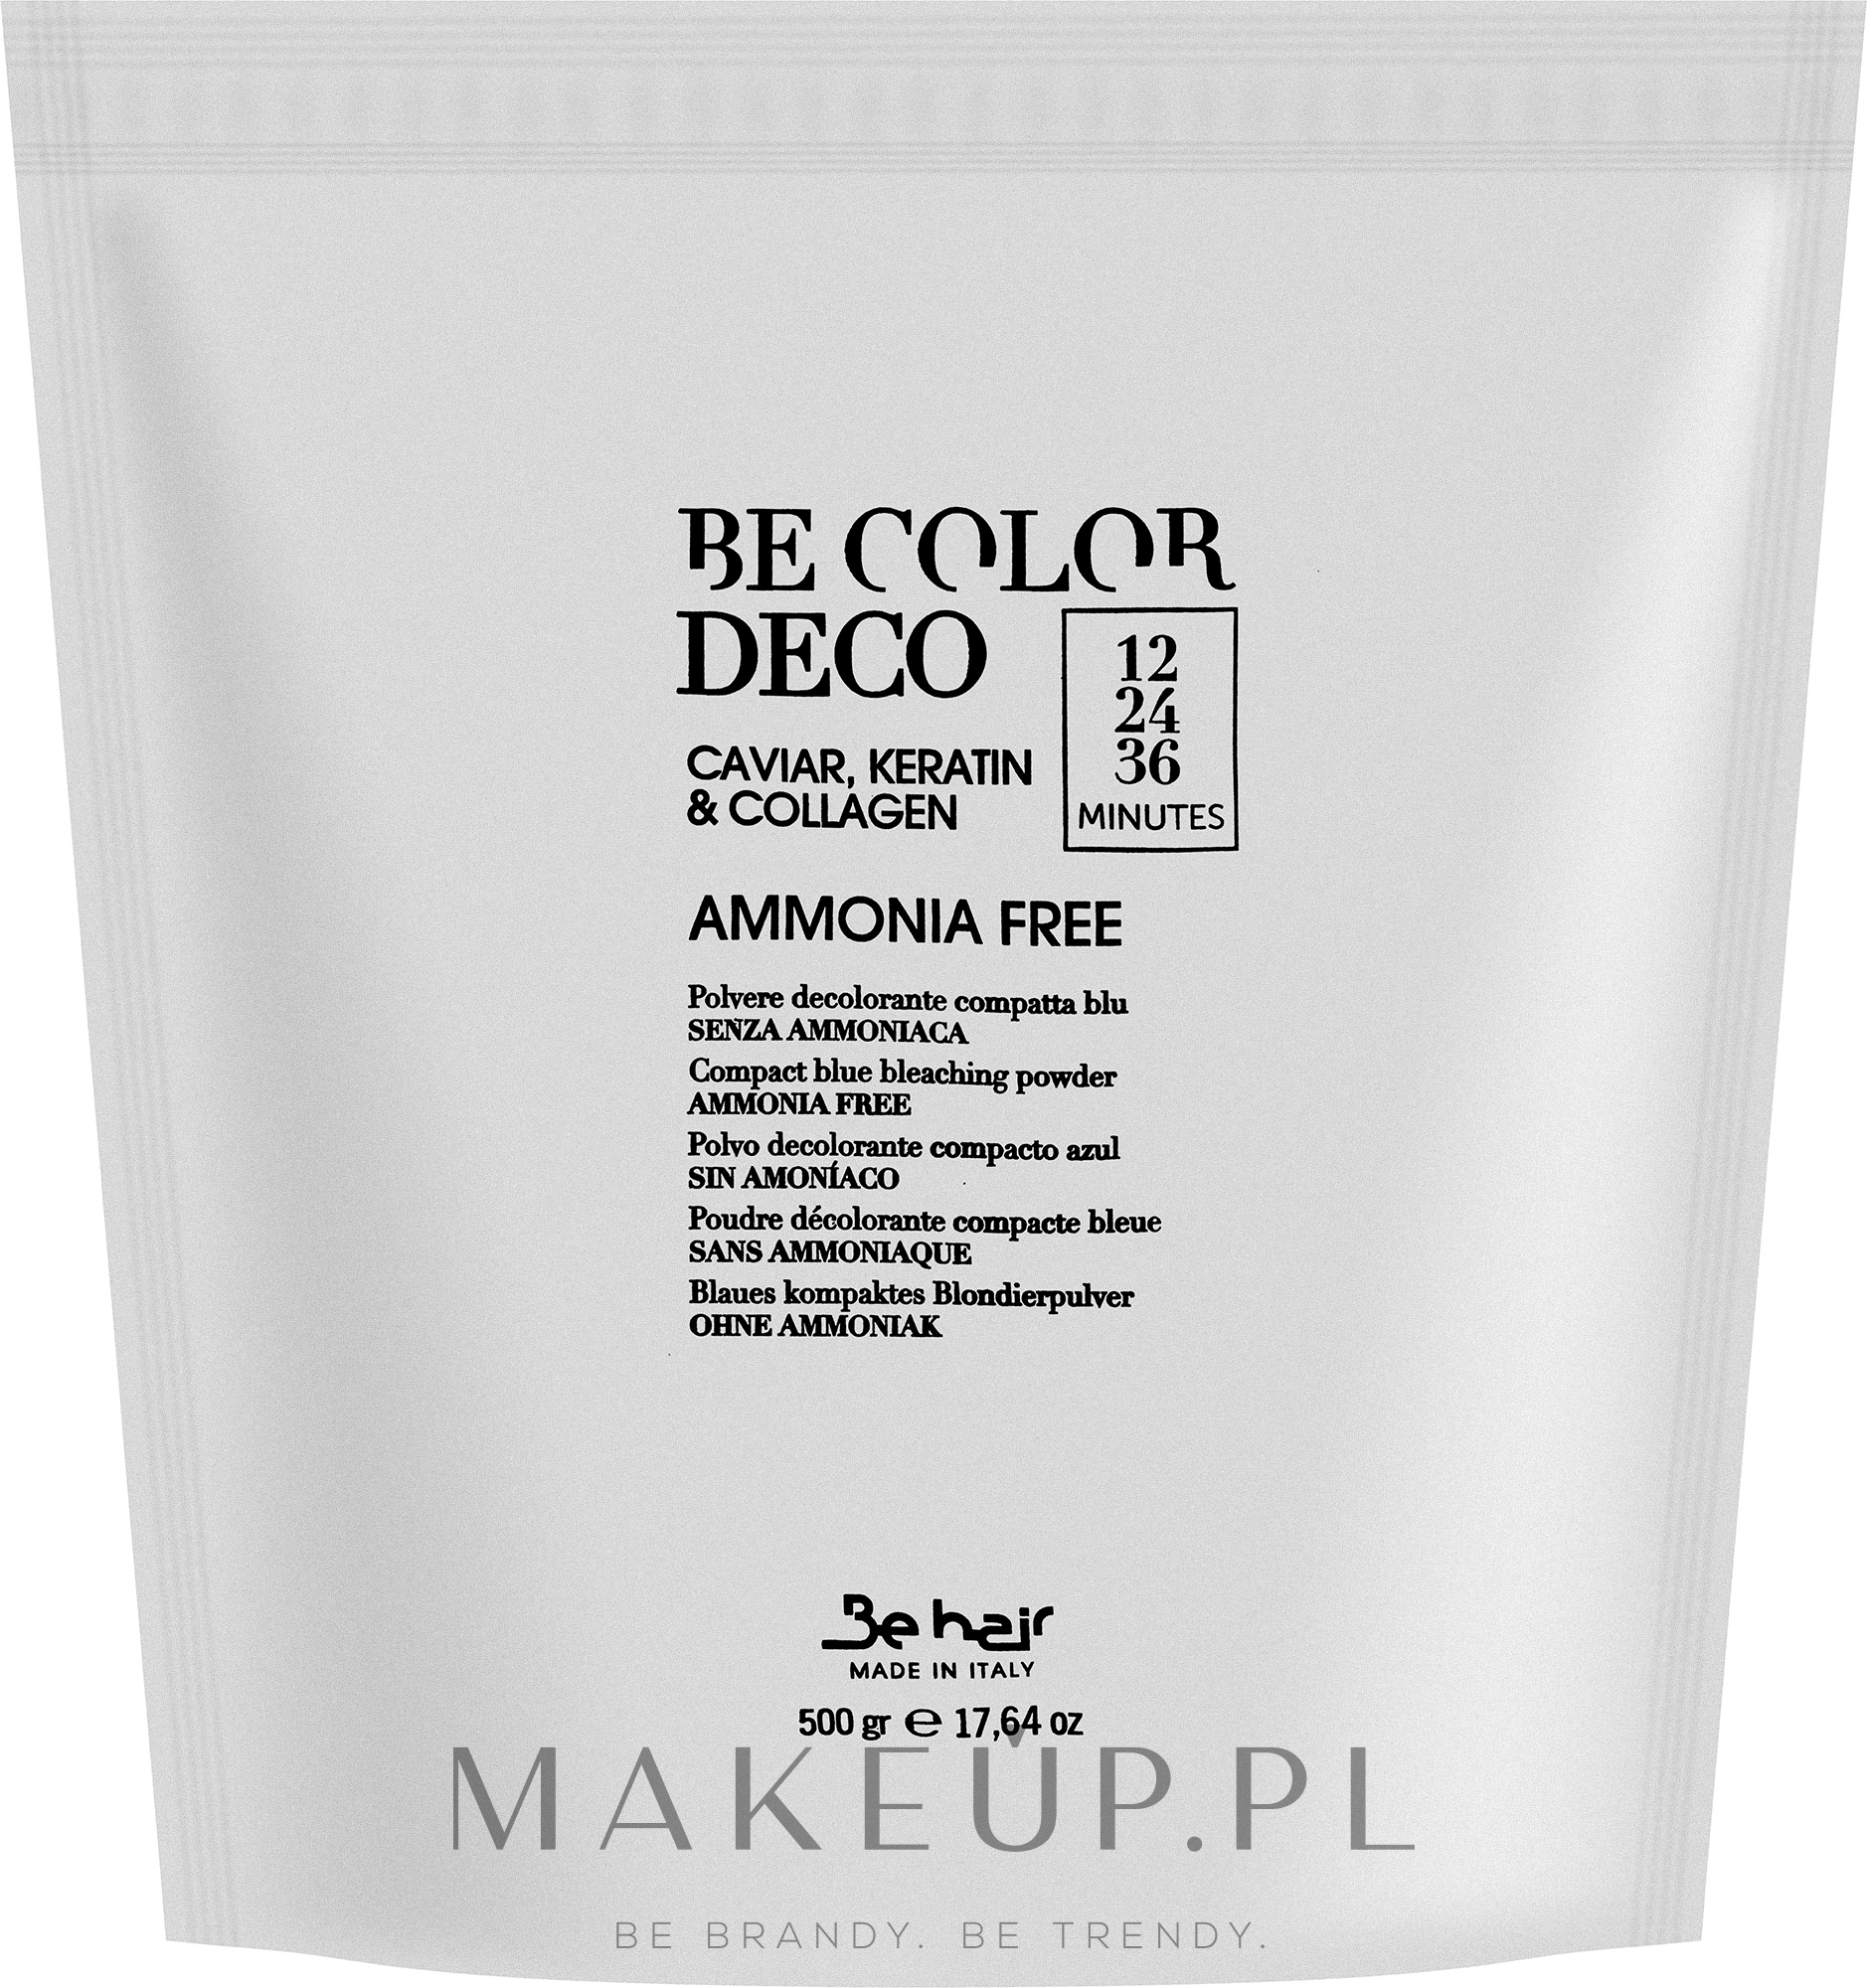 Rozjaśniacz do włosów bez amoniaku - Be Color Deco Ammonia Free Brightener 12, 24, 36 Minutes — Zdjęcie 500 g